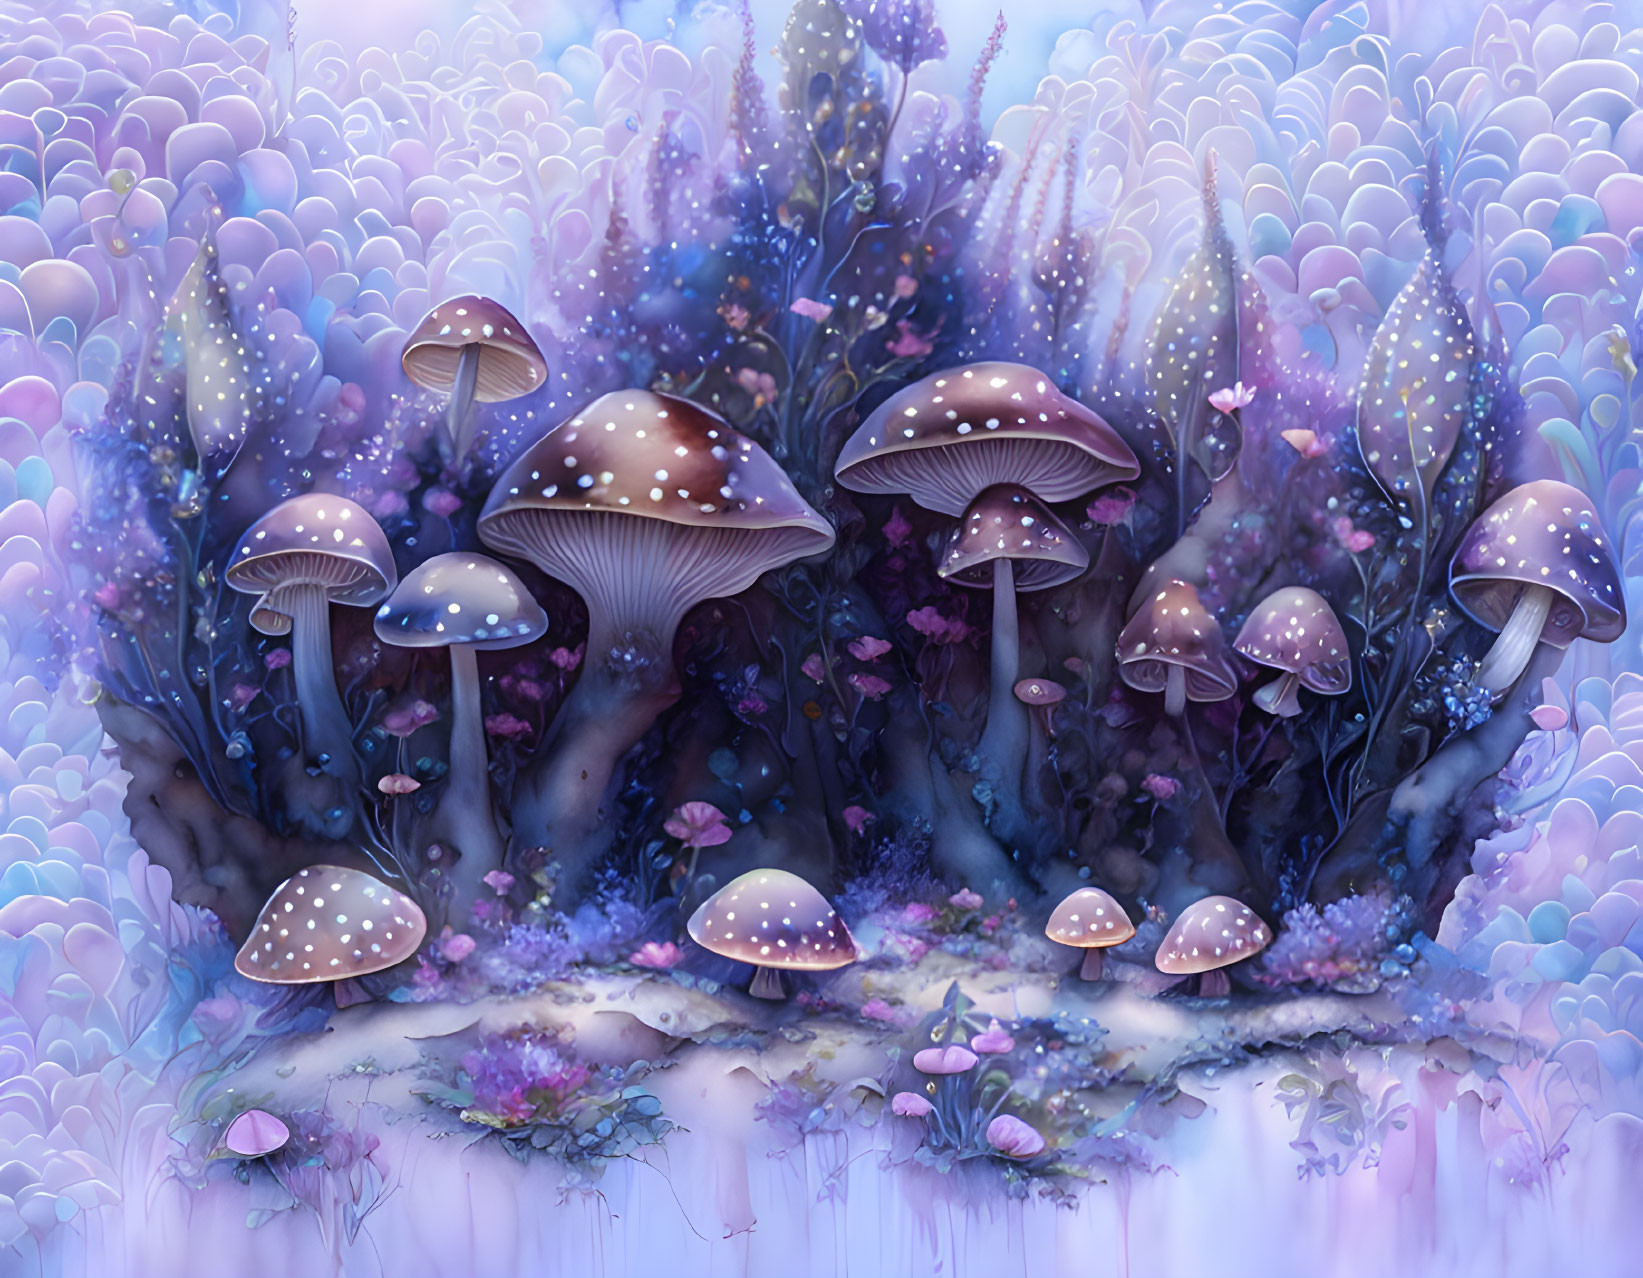 Mushrooom world